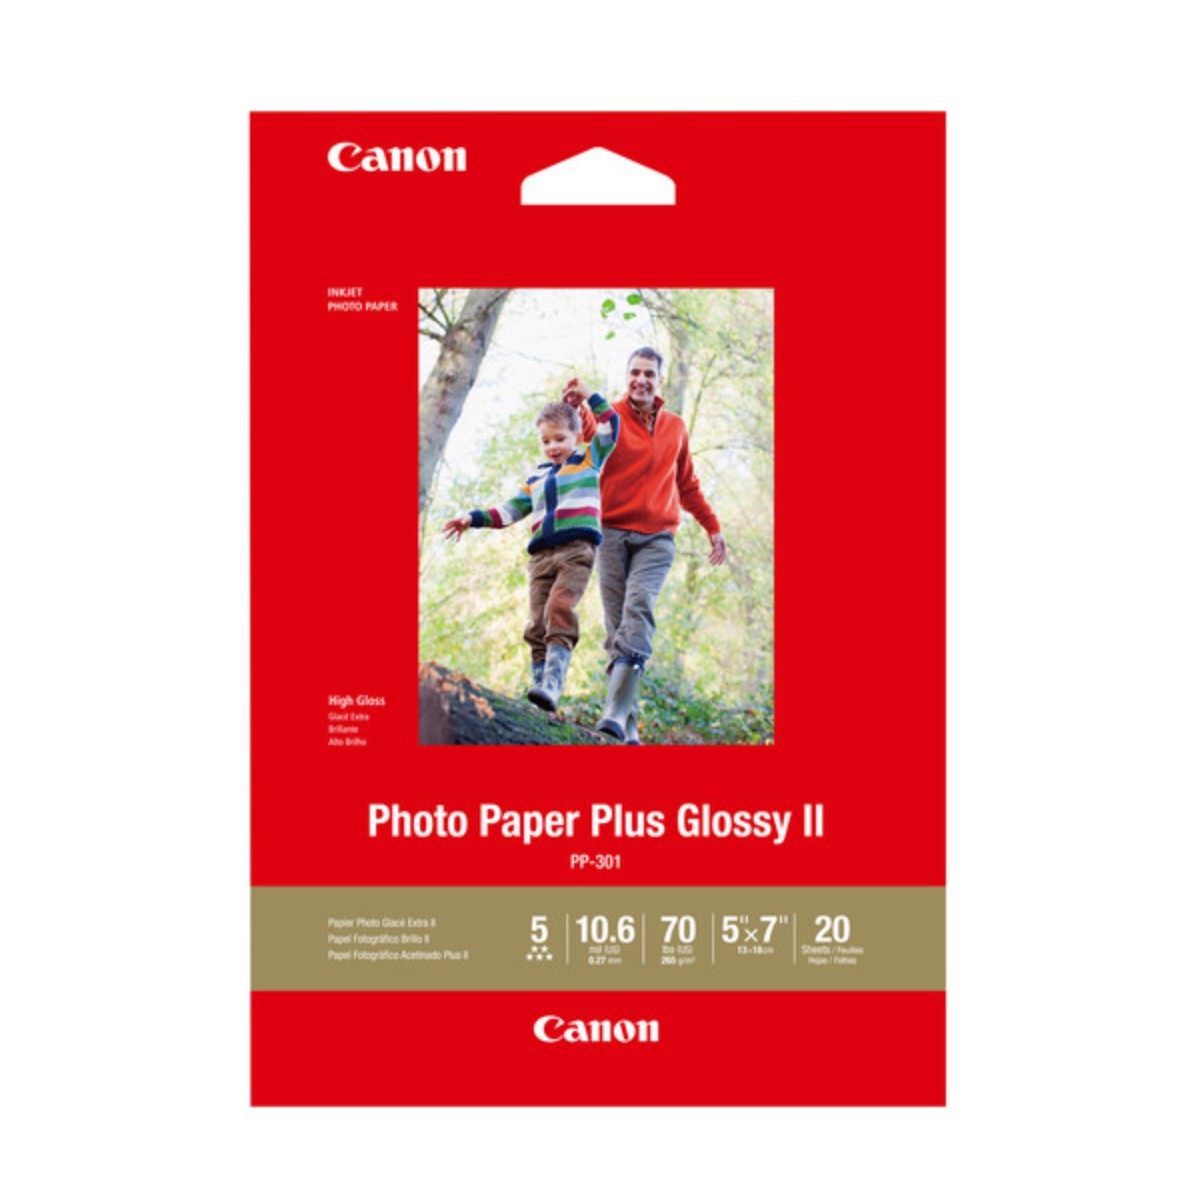 Canon Photo Paper Plus G II 5x7 20